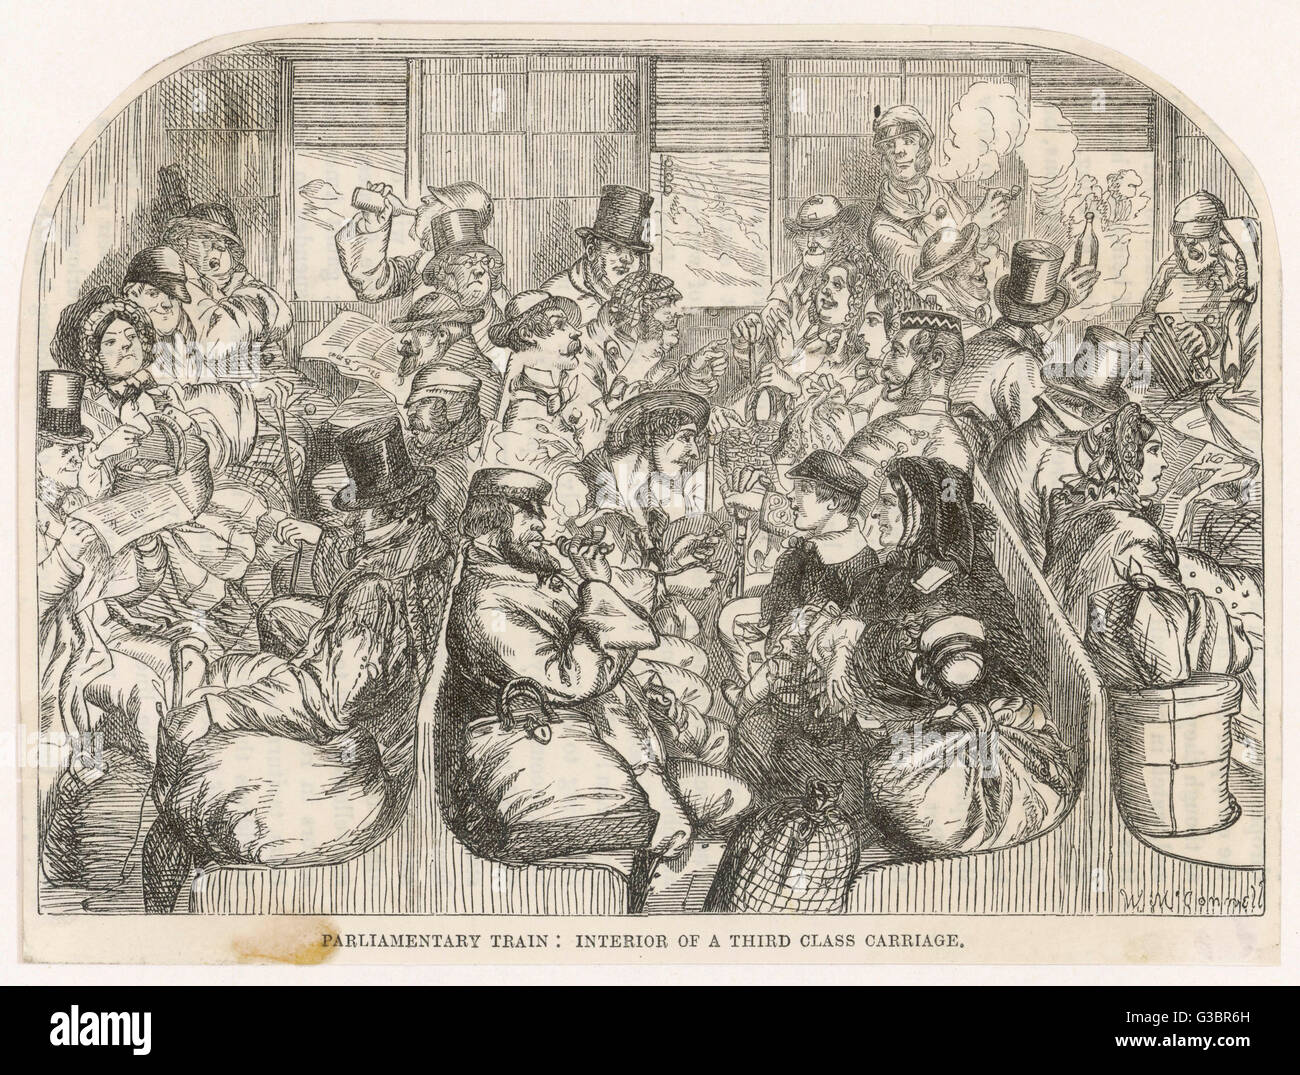 Un "parlamentare treno'. L'interno di un pranzo terza classe carrello data: 1857 Foto Stock